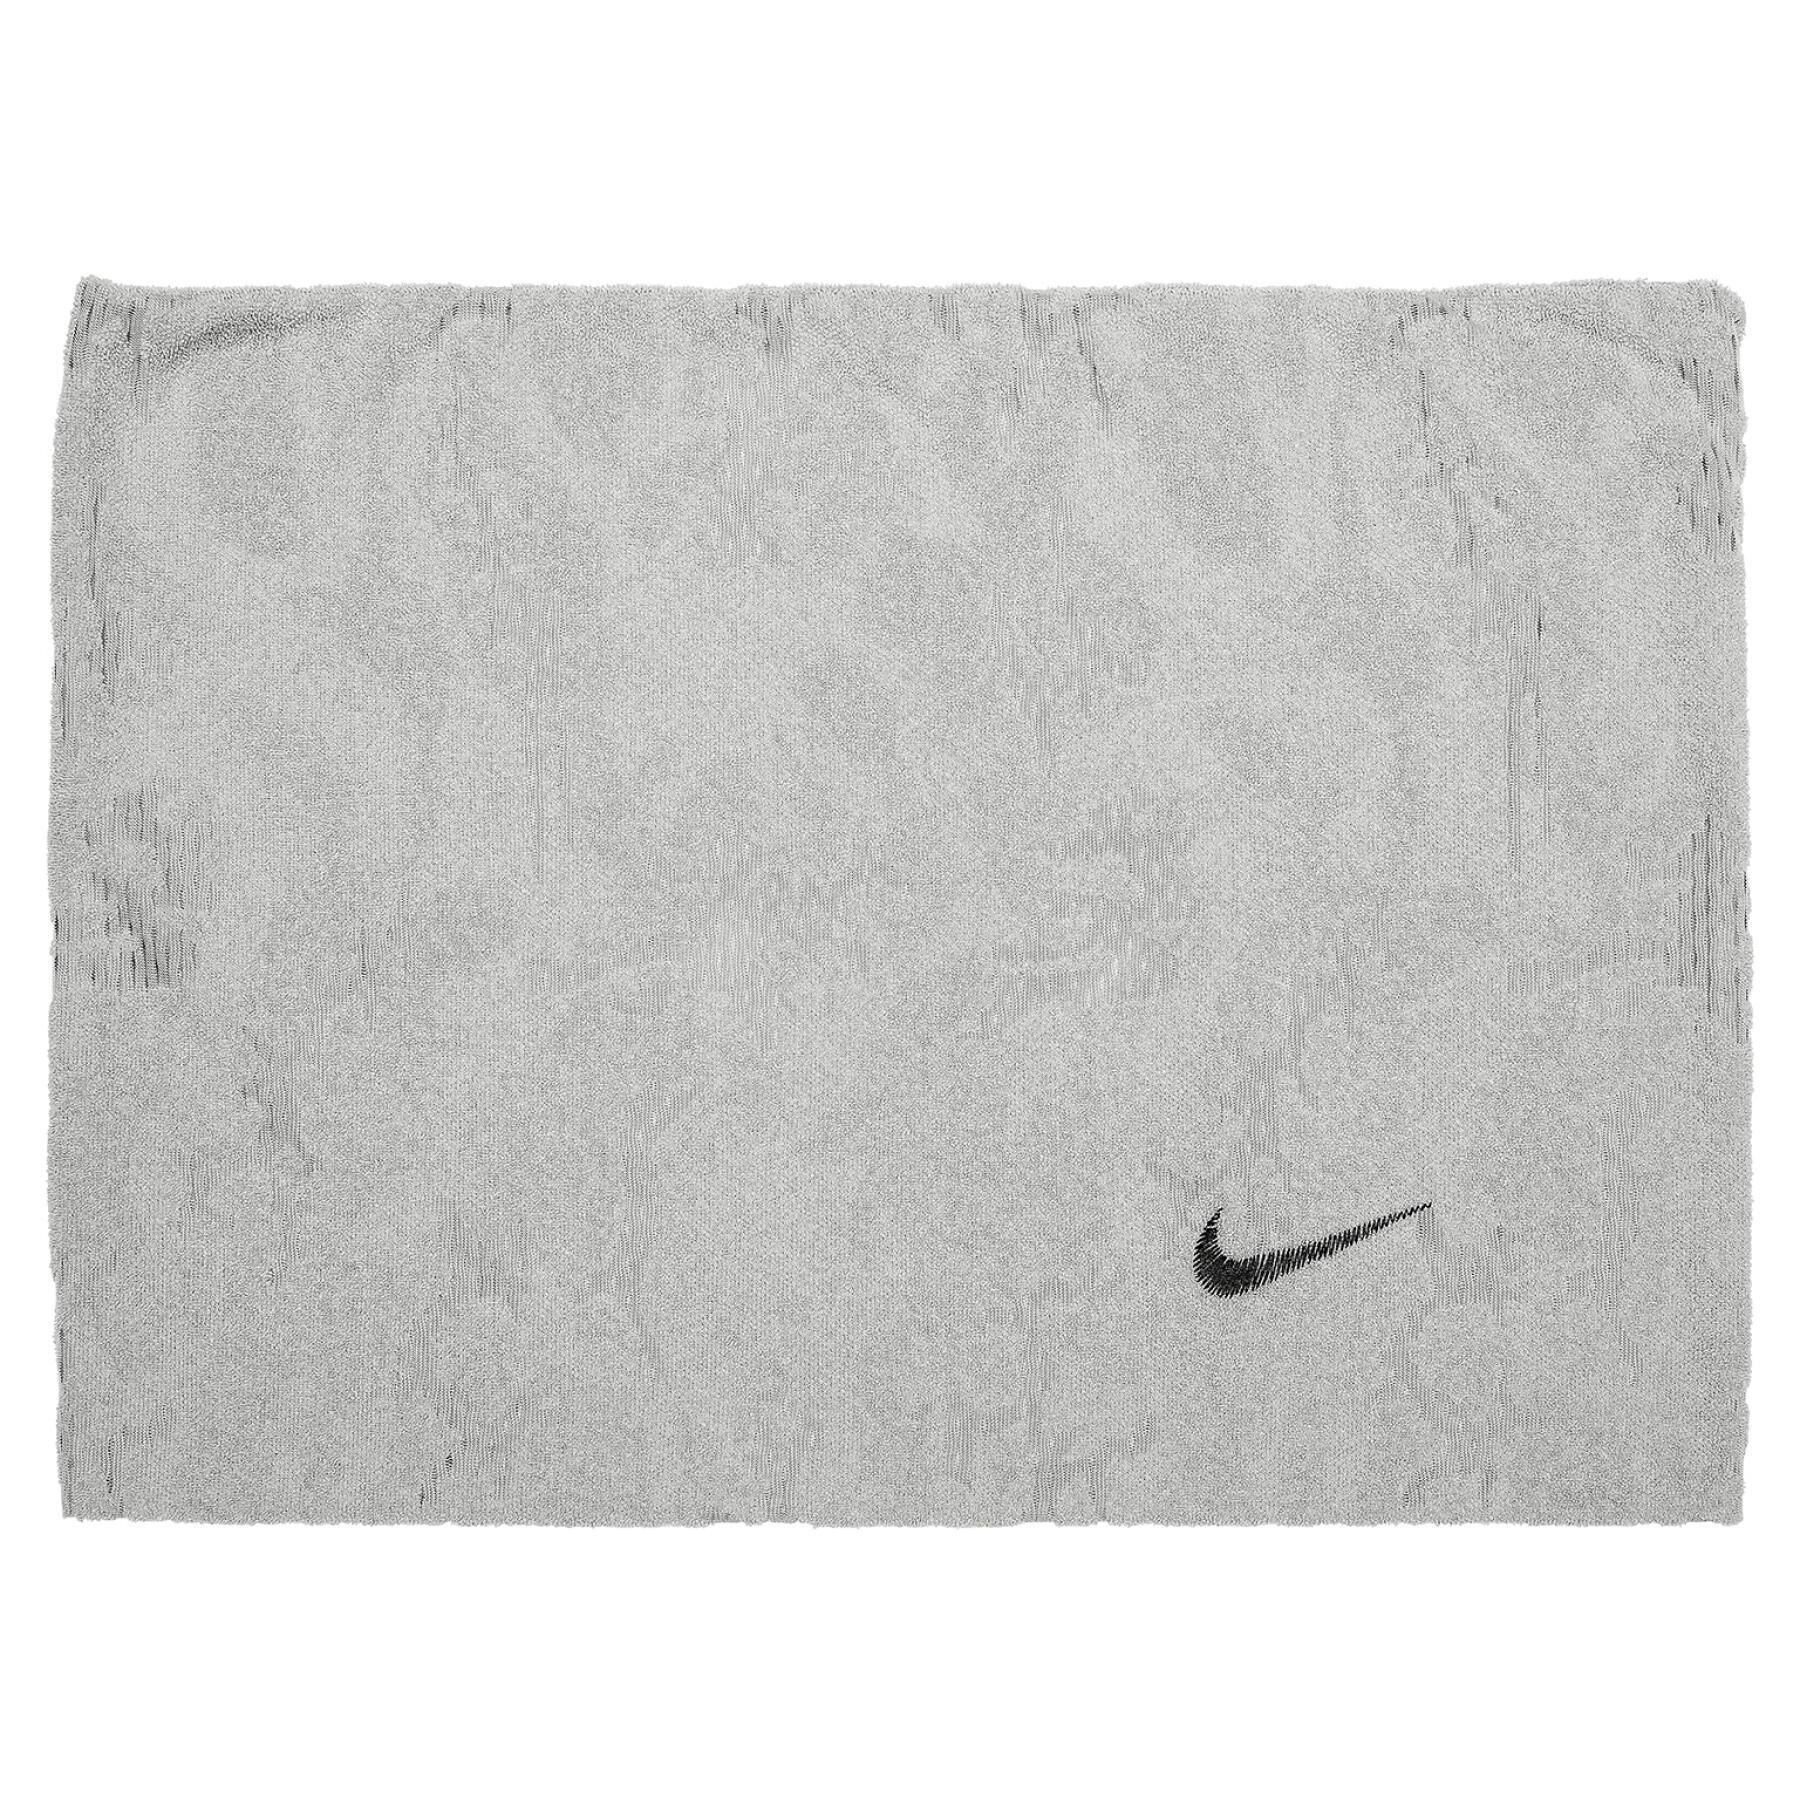 Asciugamano Nike Cooling loop